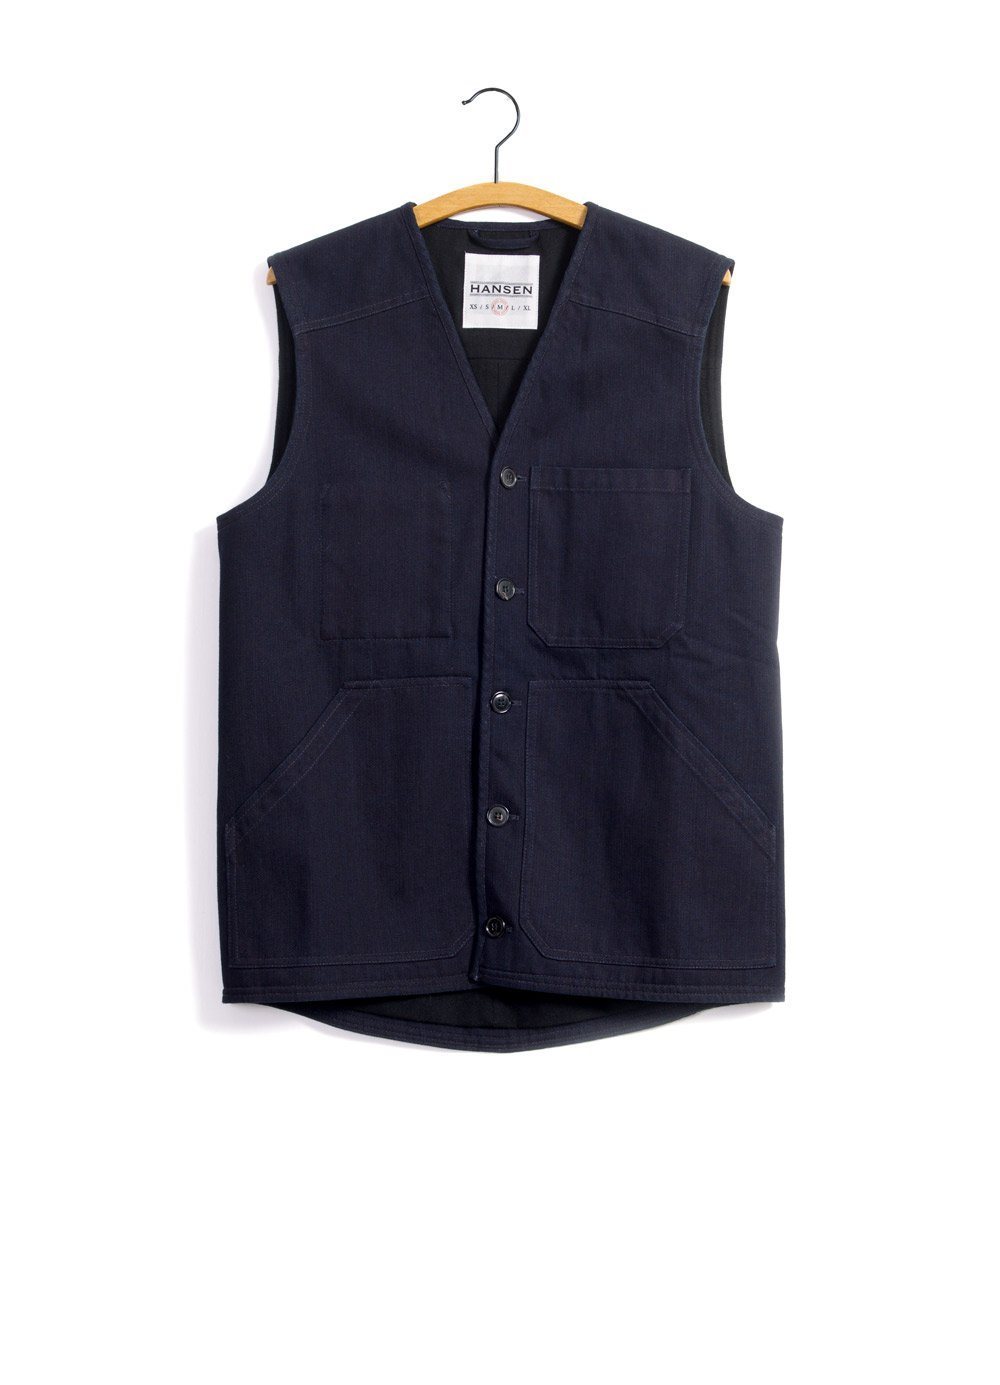 BERNT | Wool Lined Work Vest | Black Indigo | €230 -HANSEN Garments- HANSEN Garments